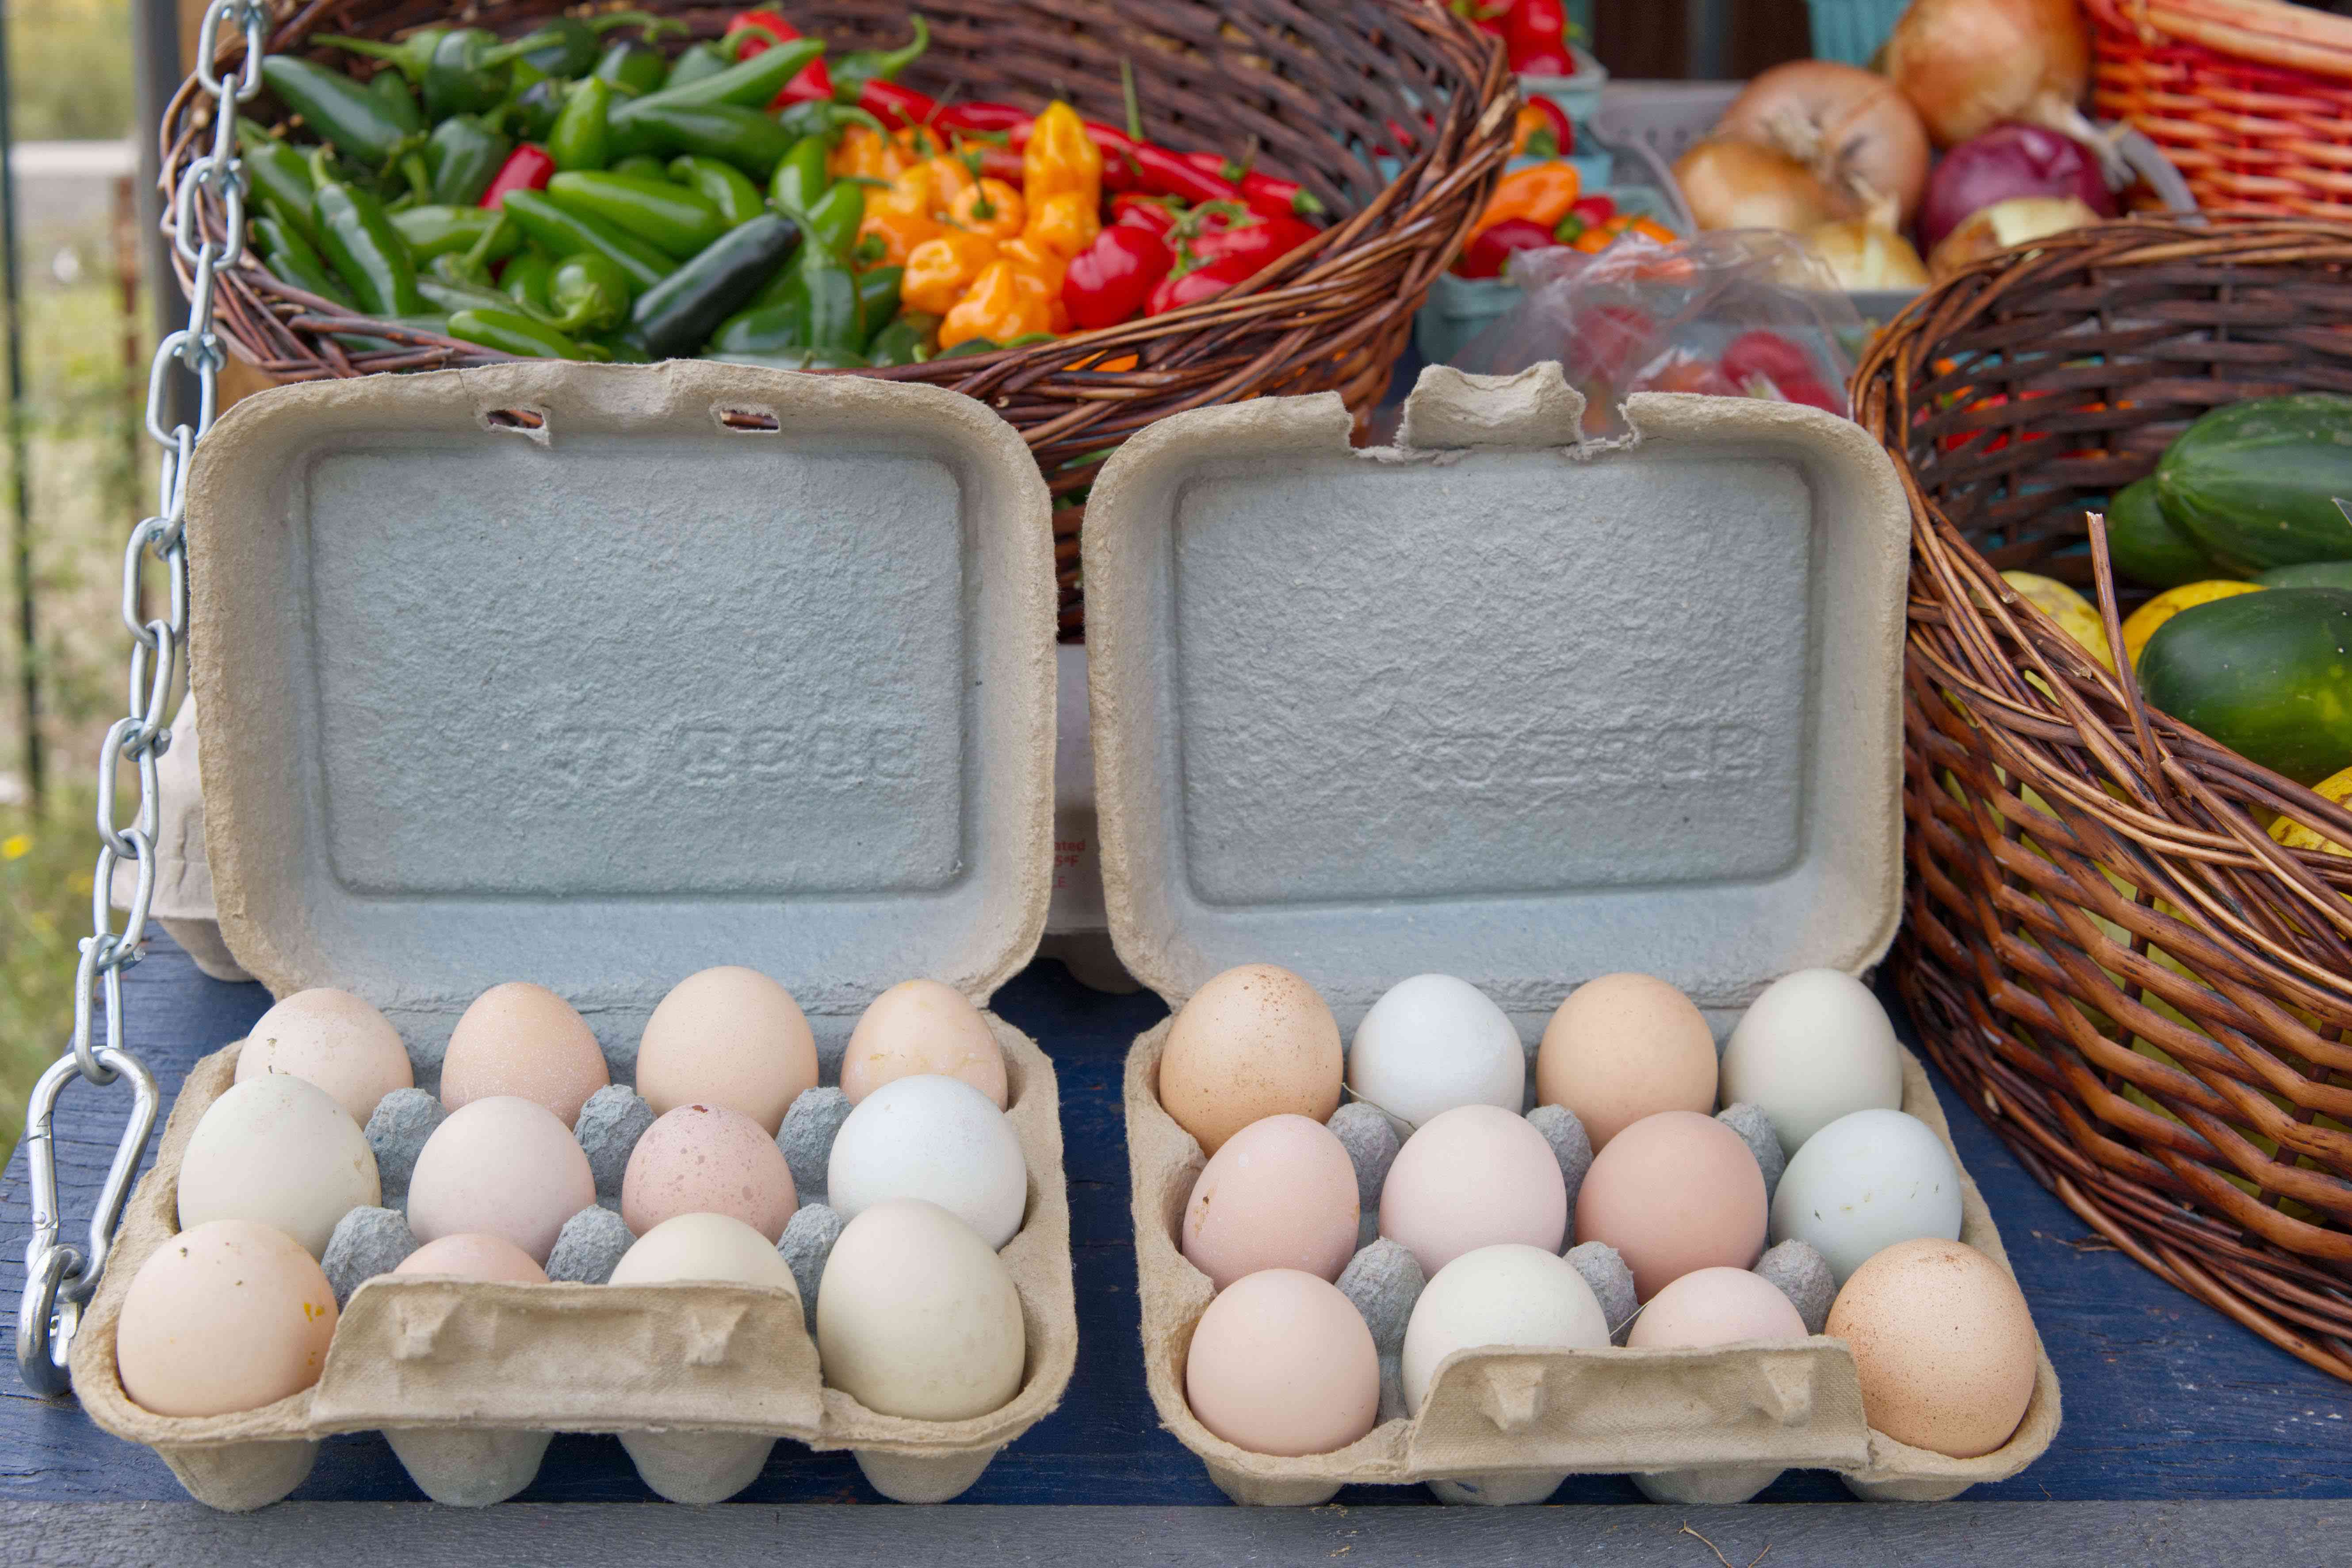 二十打农场的新鲜鸡蛋在农贸市场外出售